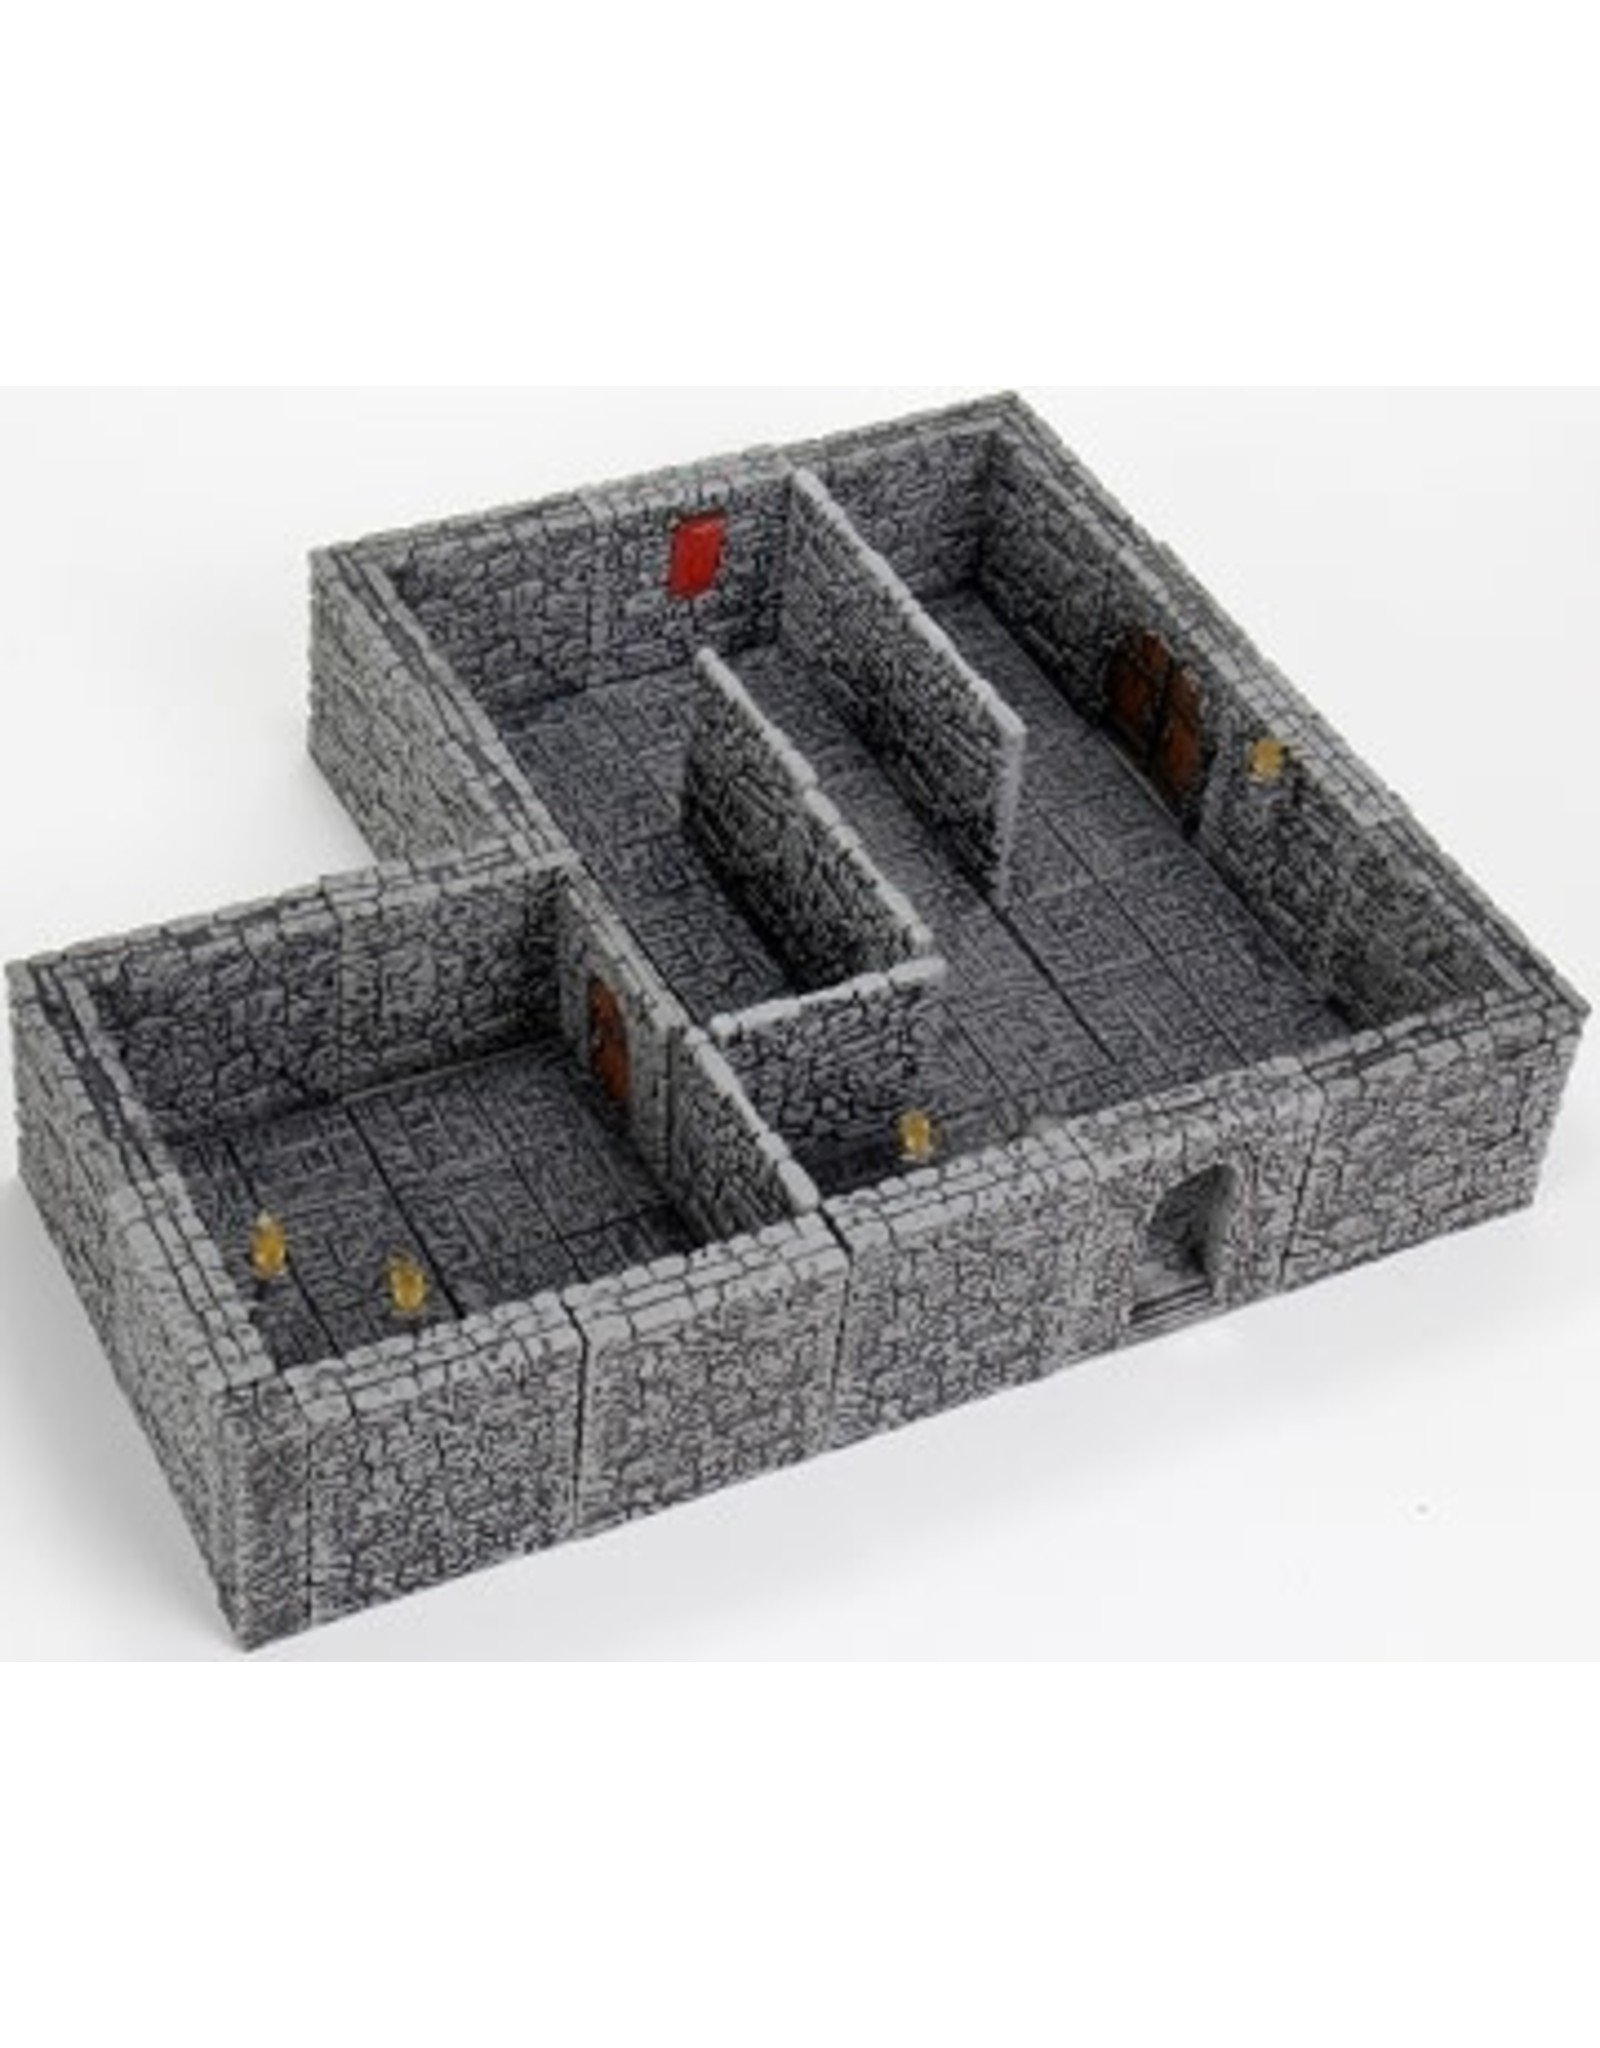 WizKids Warlock Tiles Dungeon Tiles 2: Stone Walls Expansion